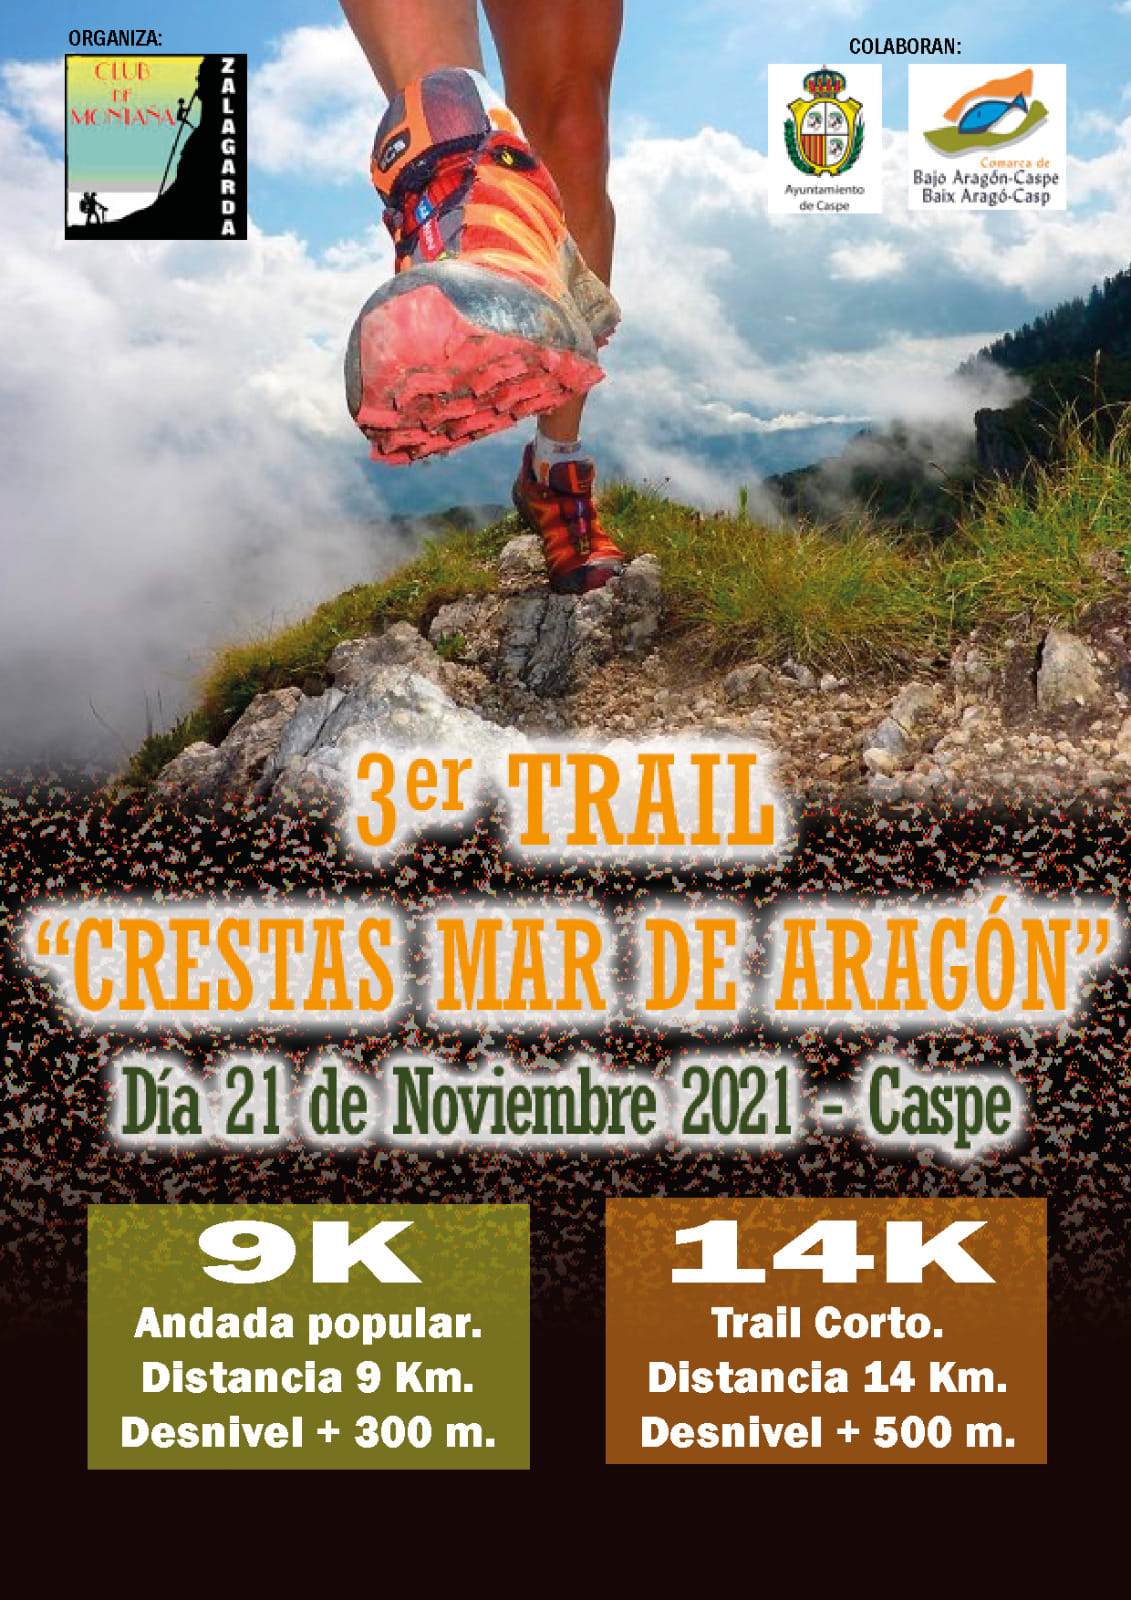 TRAIL CRESTAS MAR DE ARAGON 2021 - Inscríbete